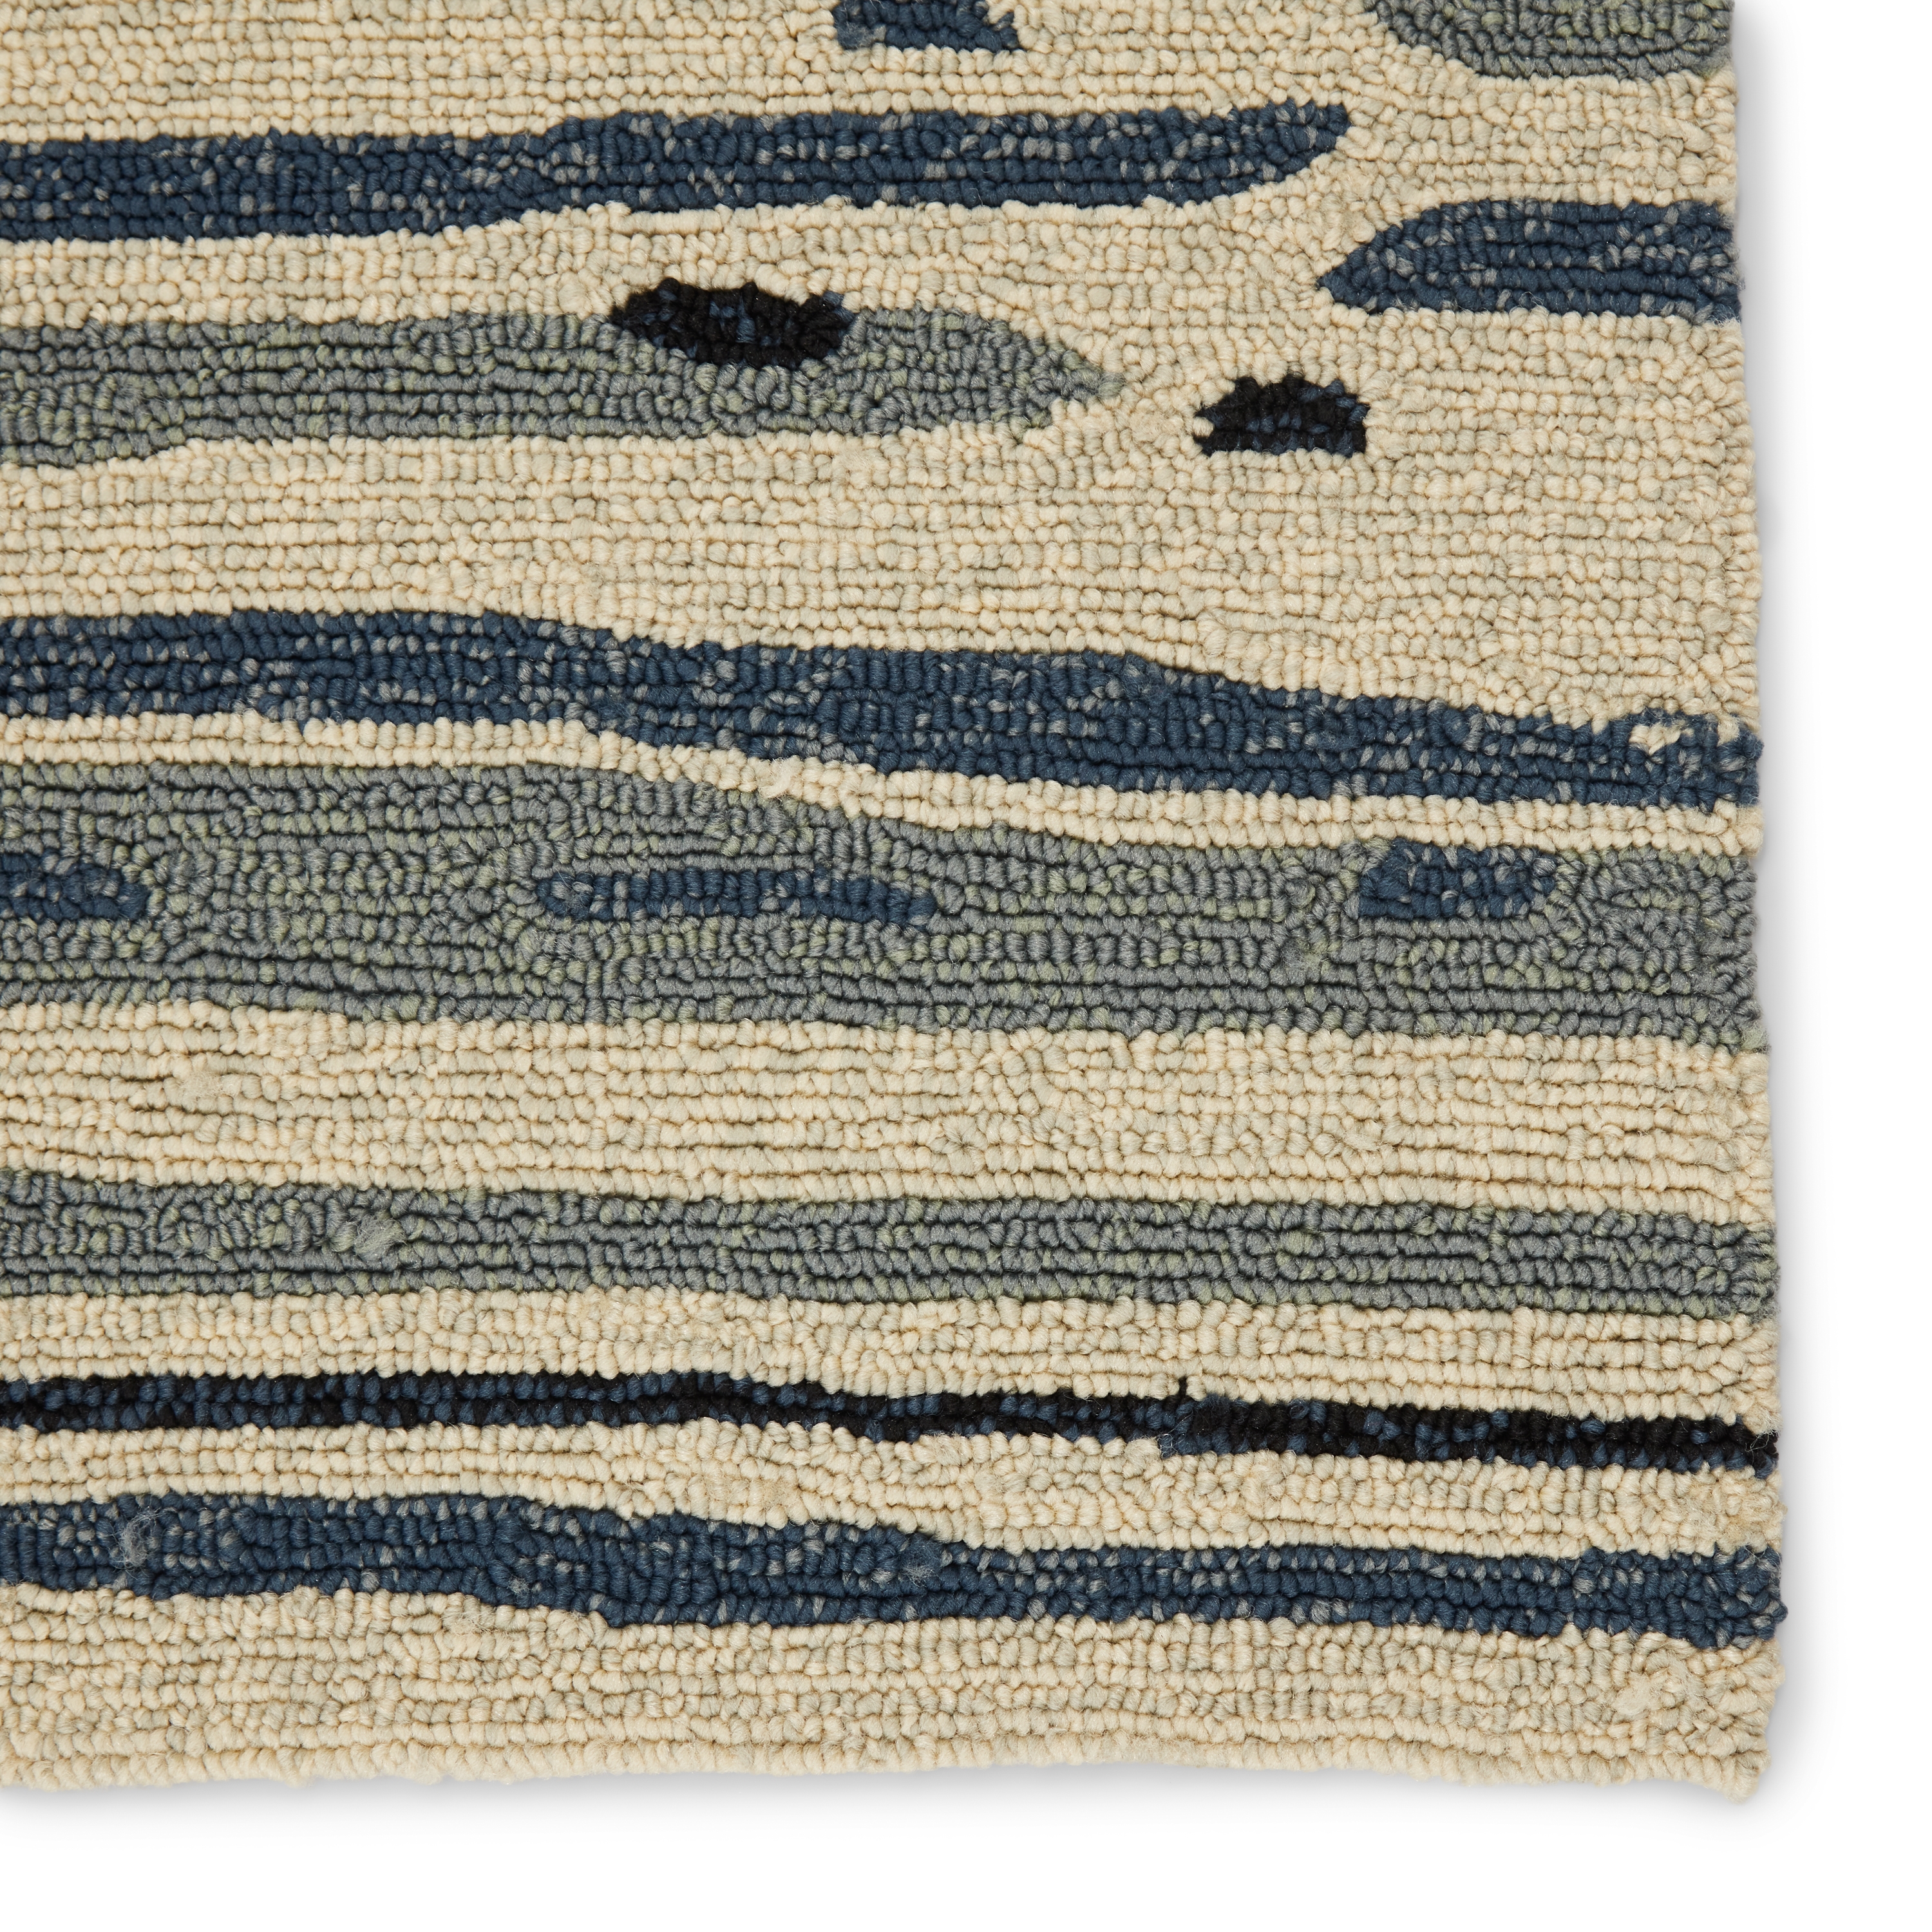 Lauren Wan by Sketchy Lines Indoor/ Outdoor Abstract Silver/ Blue Runner Rug (2'6" X 8') - Image 3